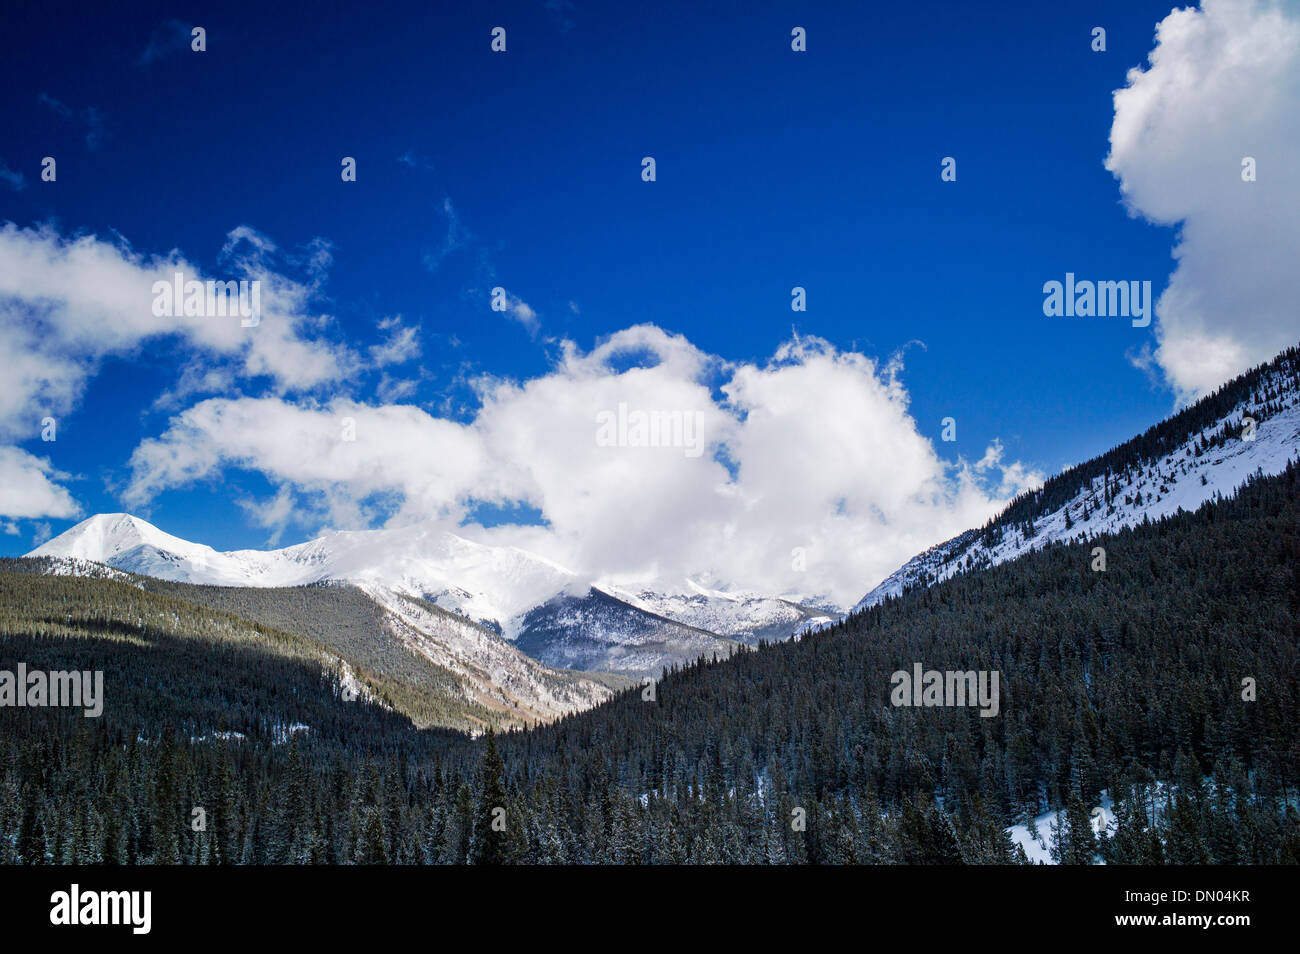 Vista invernal de Sawatch Range desde la parte superior de Monarch Mountain, Colorado, EE.UU. Foto de stock